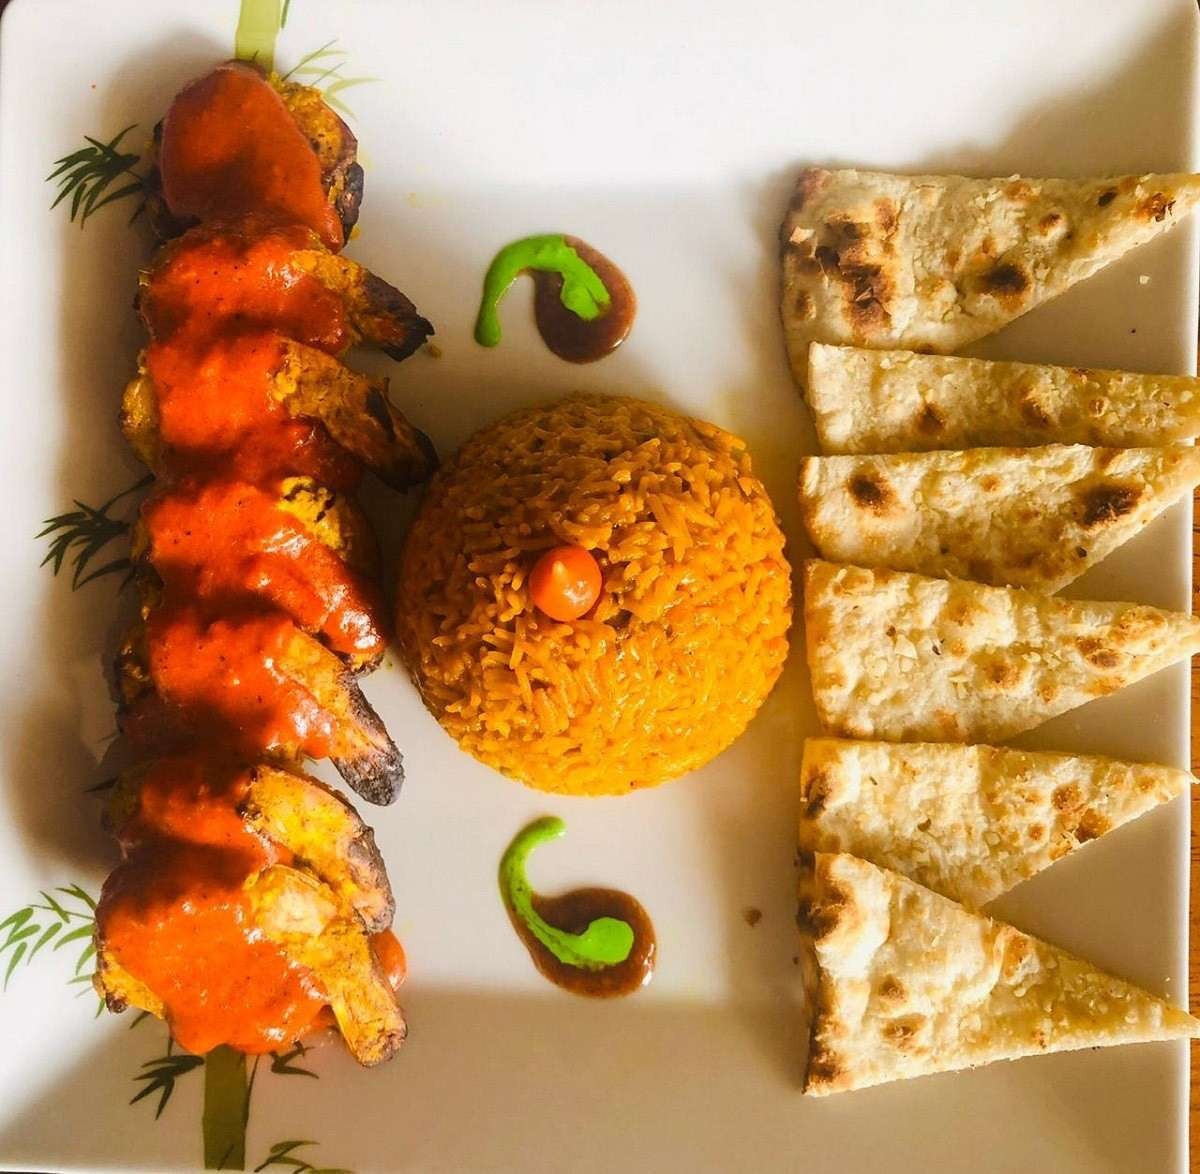  camarão com temperos da Índia acompanhado de arroz basmati e pão de alho